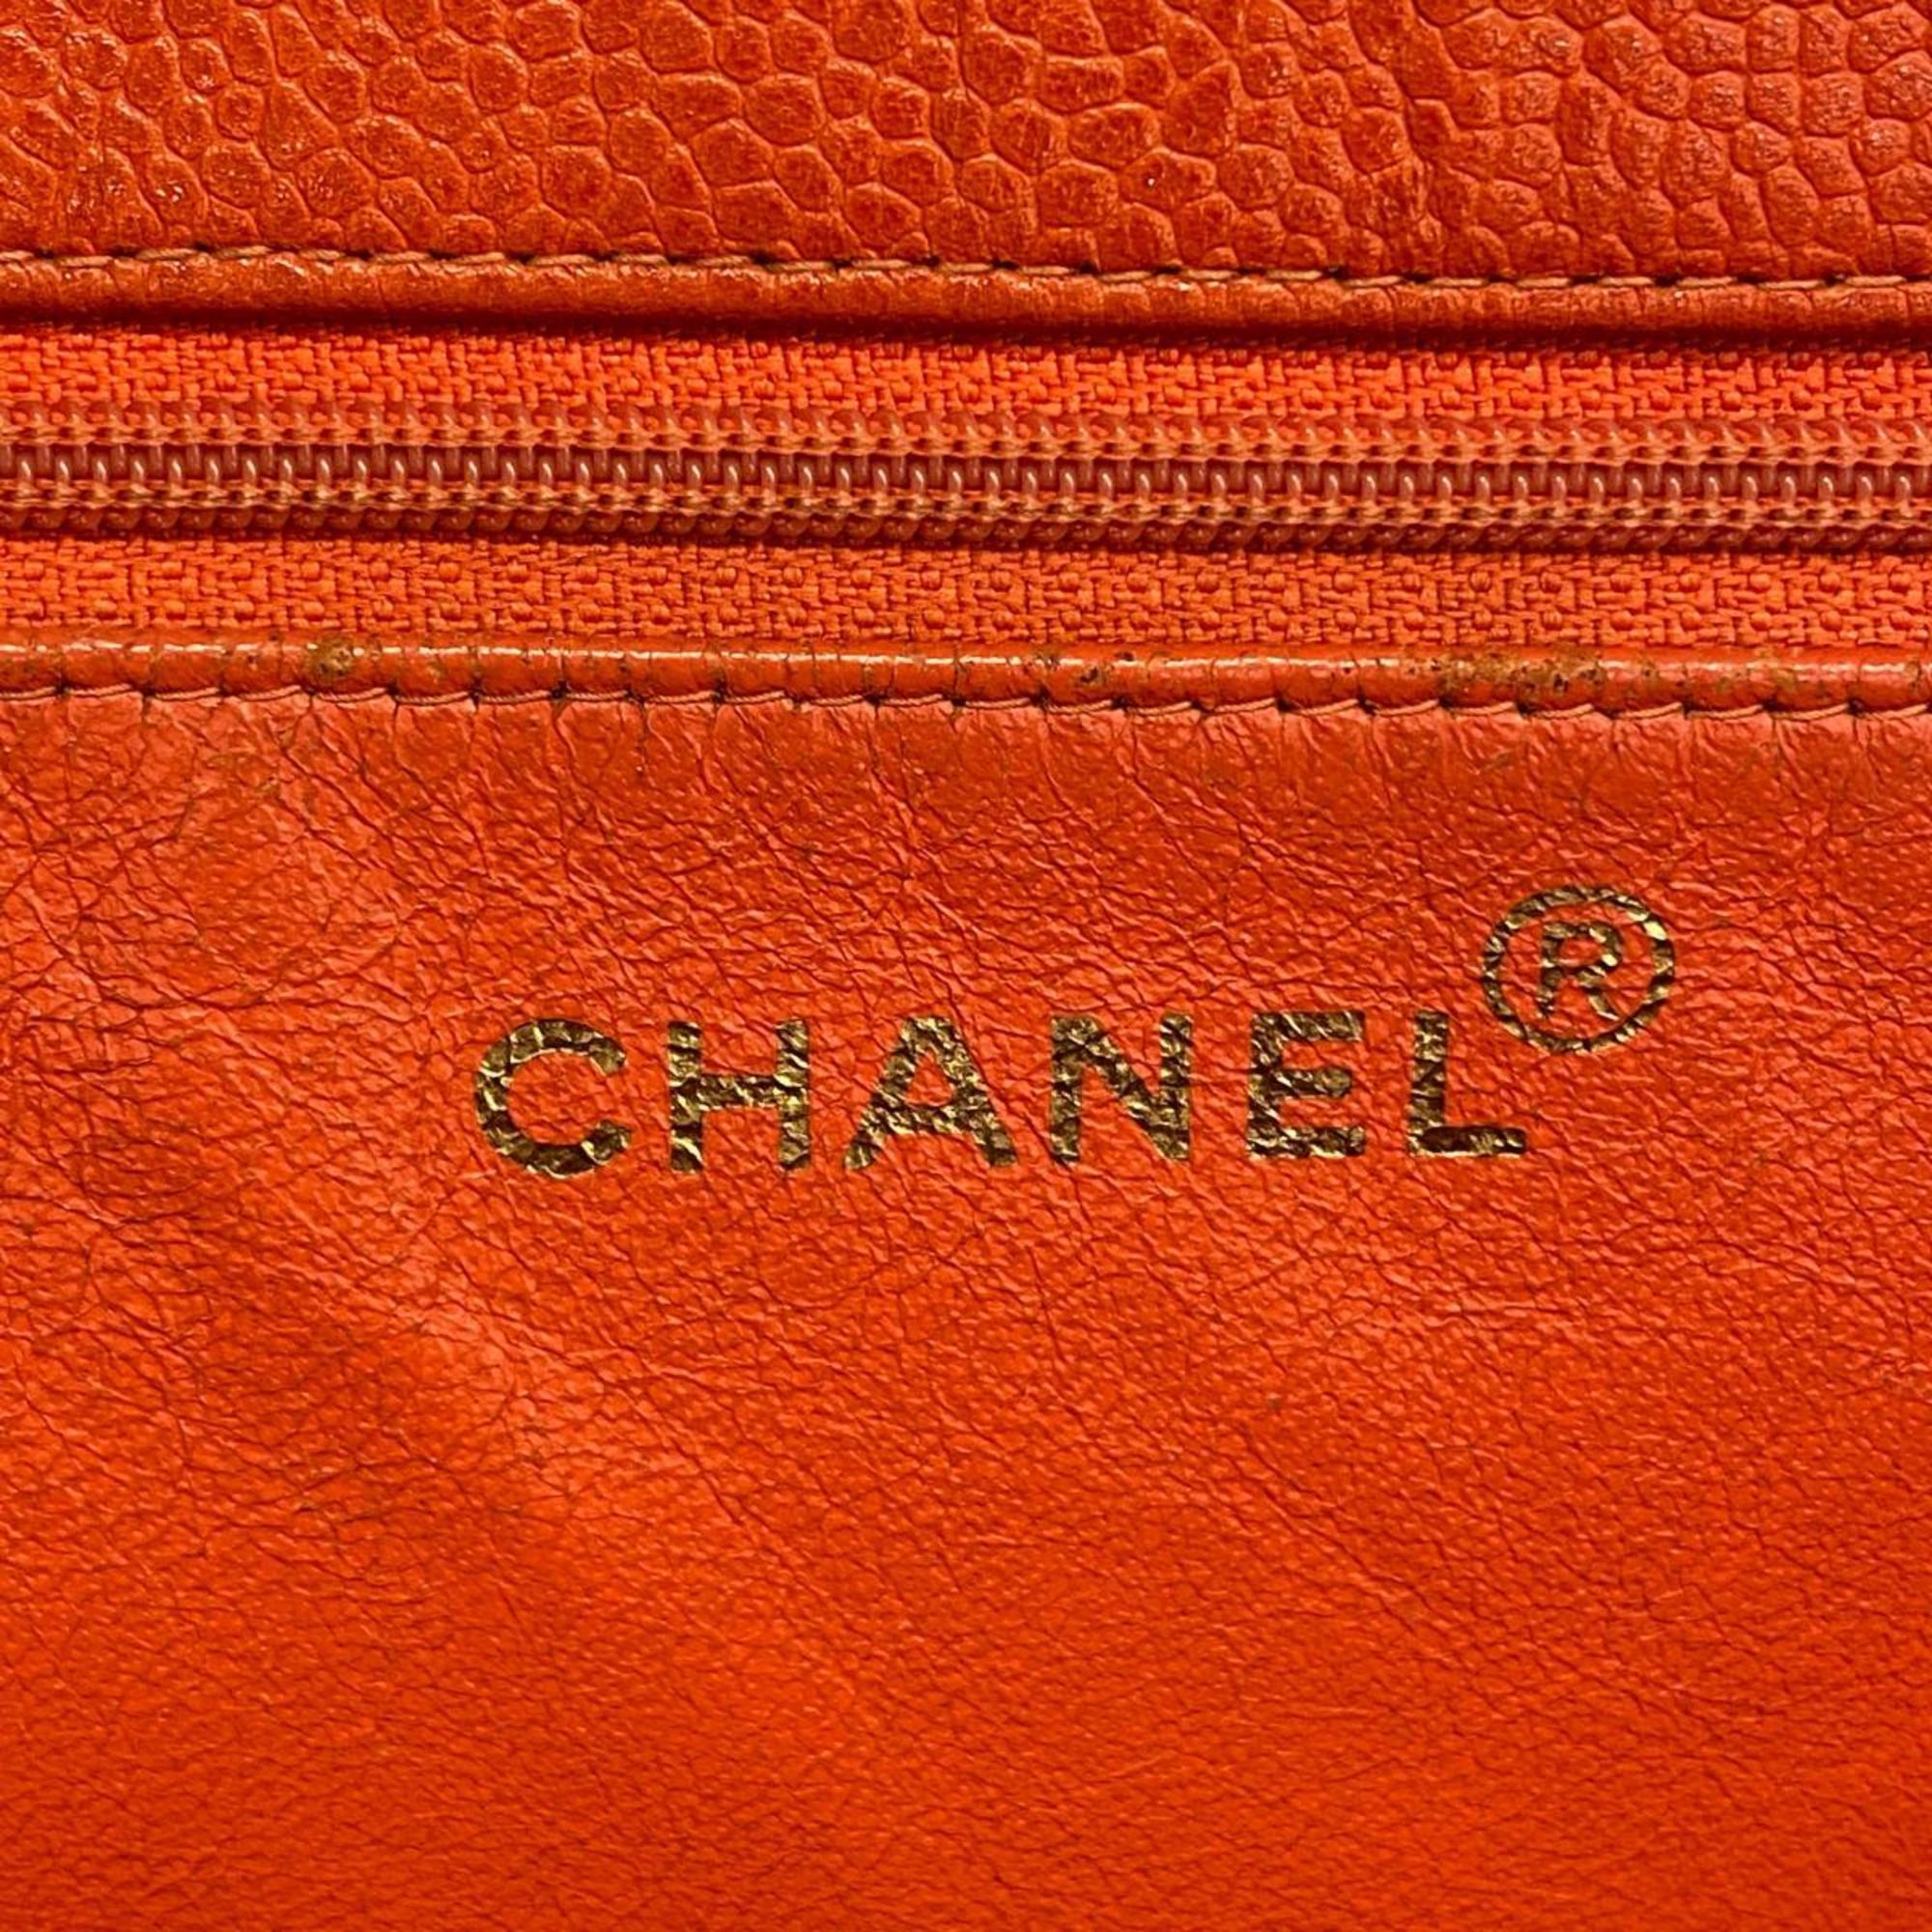 シャネル(Chanel) シャネル ショルダーバッグ キャビアスキン オレンジ   レディース